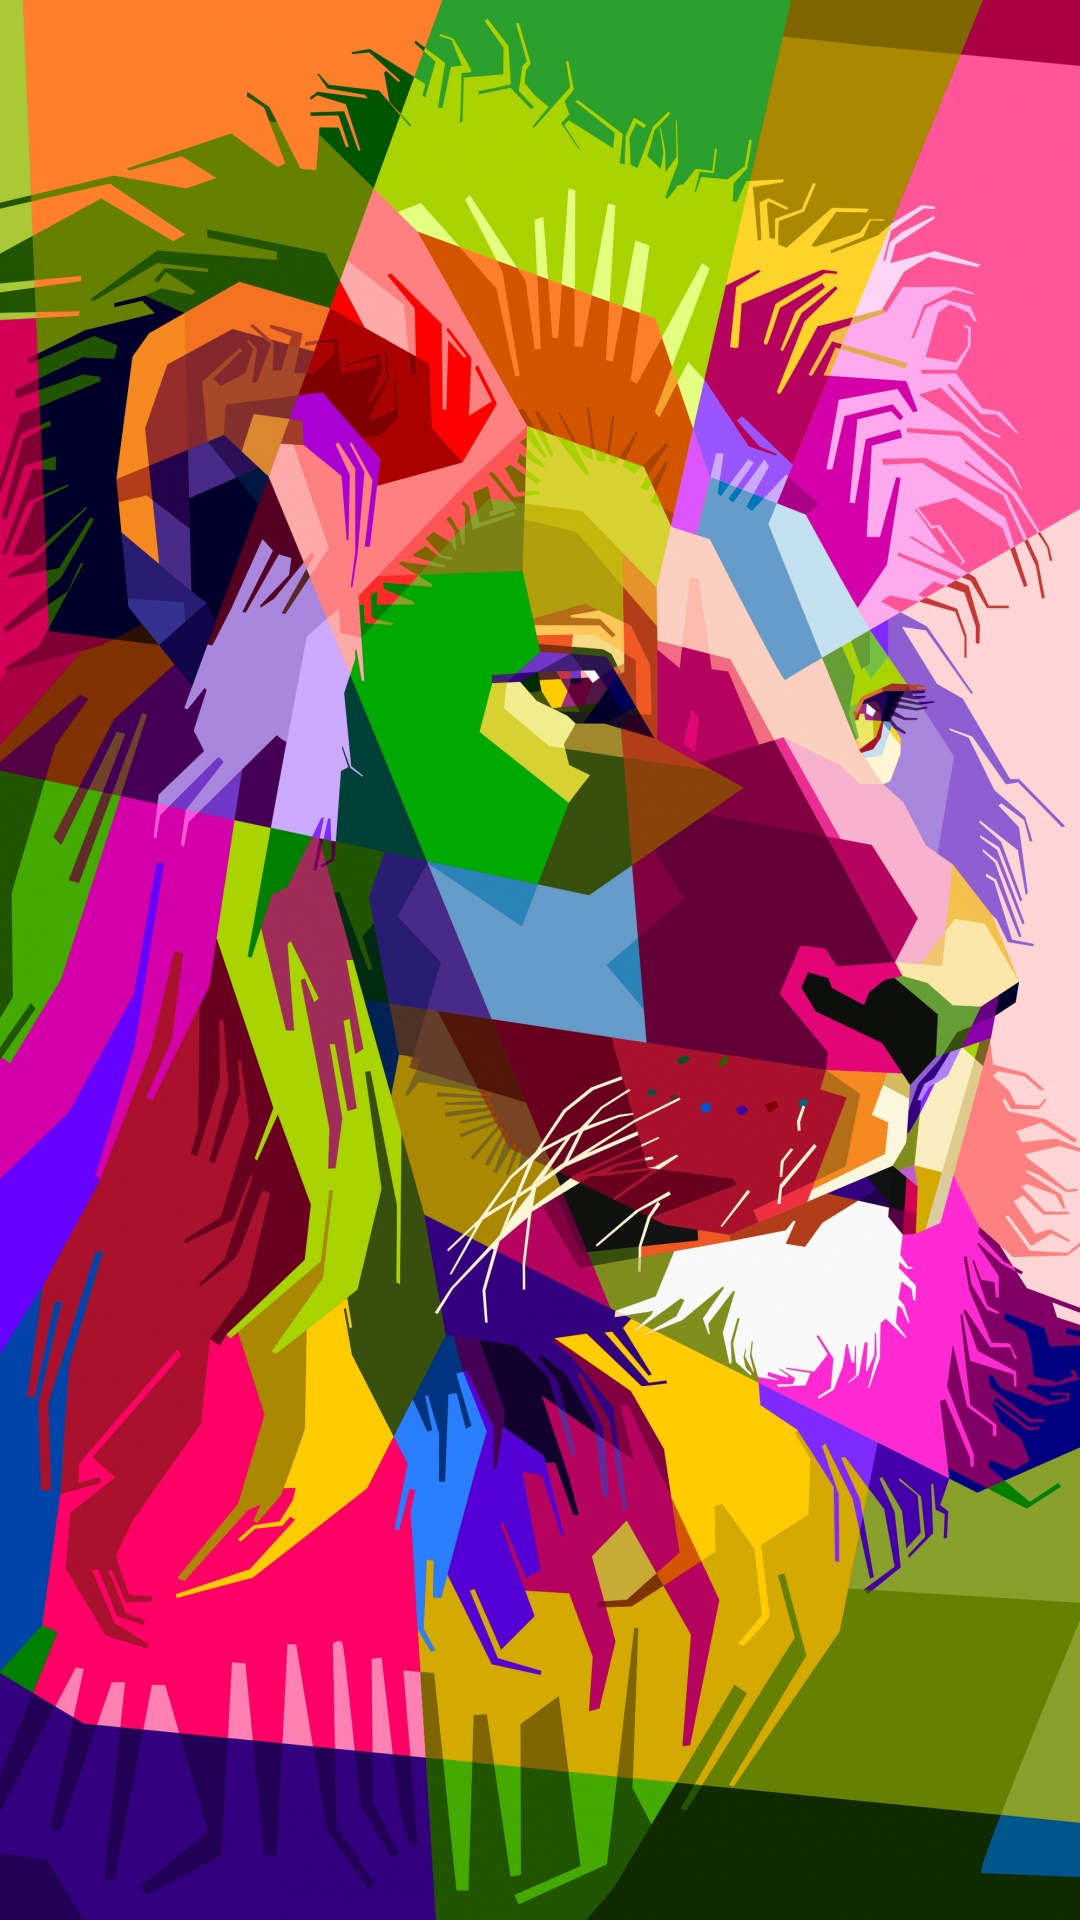 狮子, 艺术, 流行艺术, 图形设计, 品红色 壁纸 1080x1920 允许